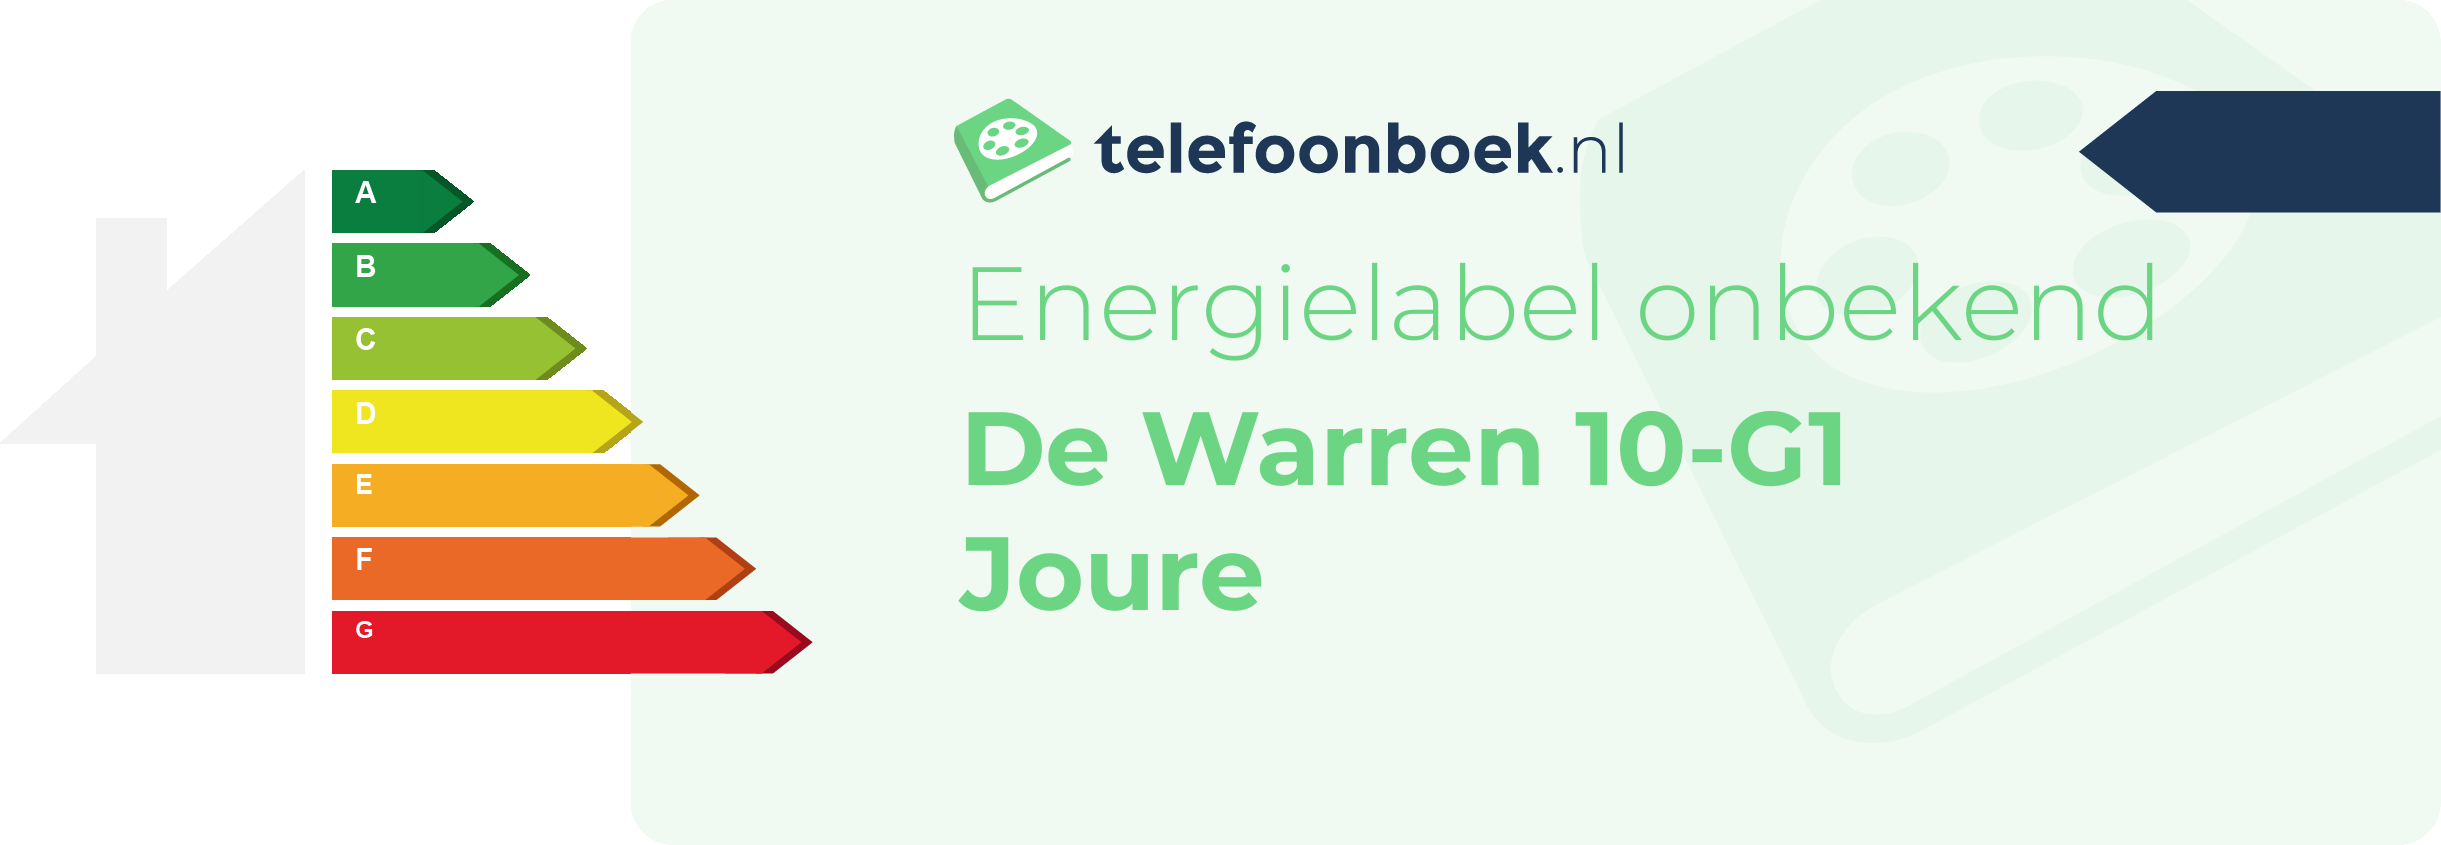 Energielabel De Warren 10-G1 Joure